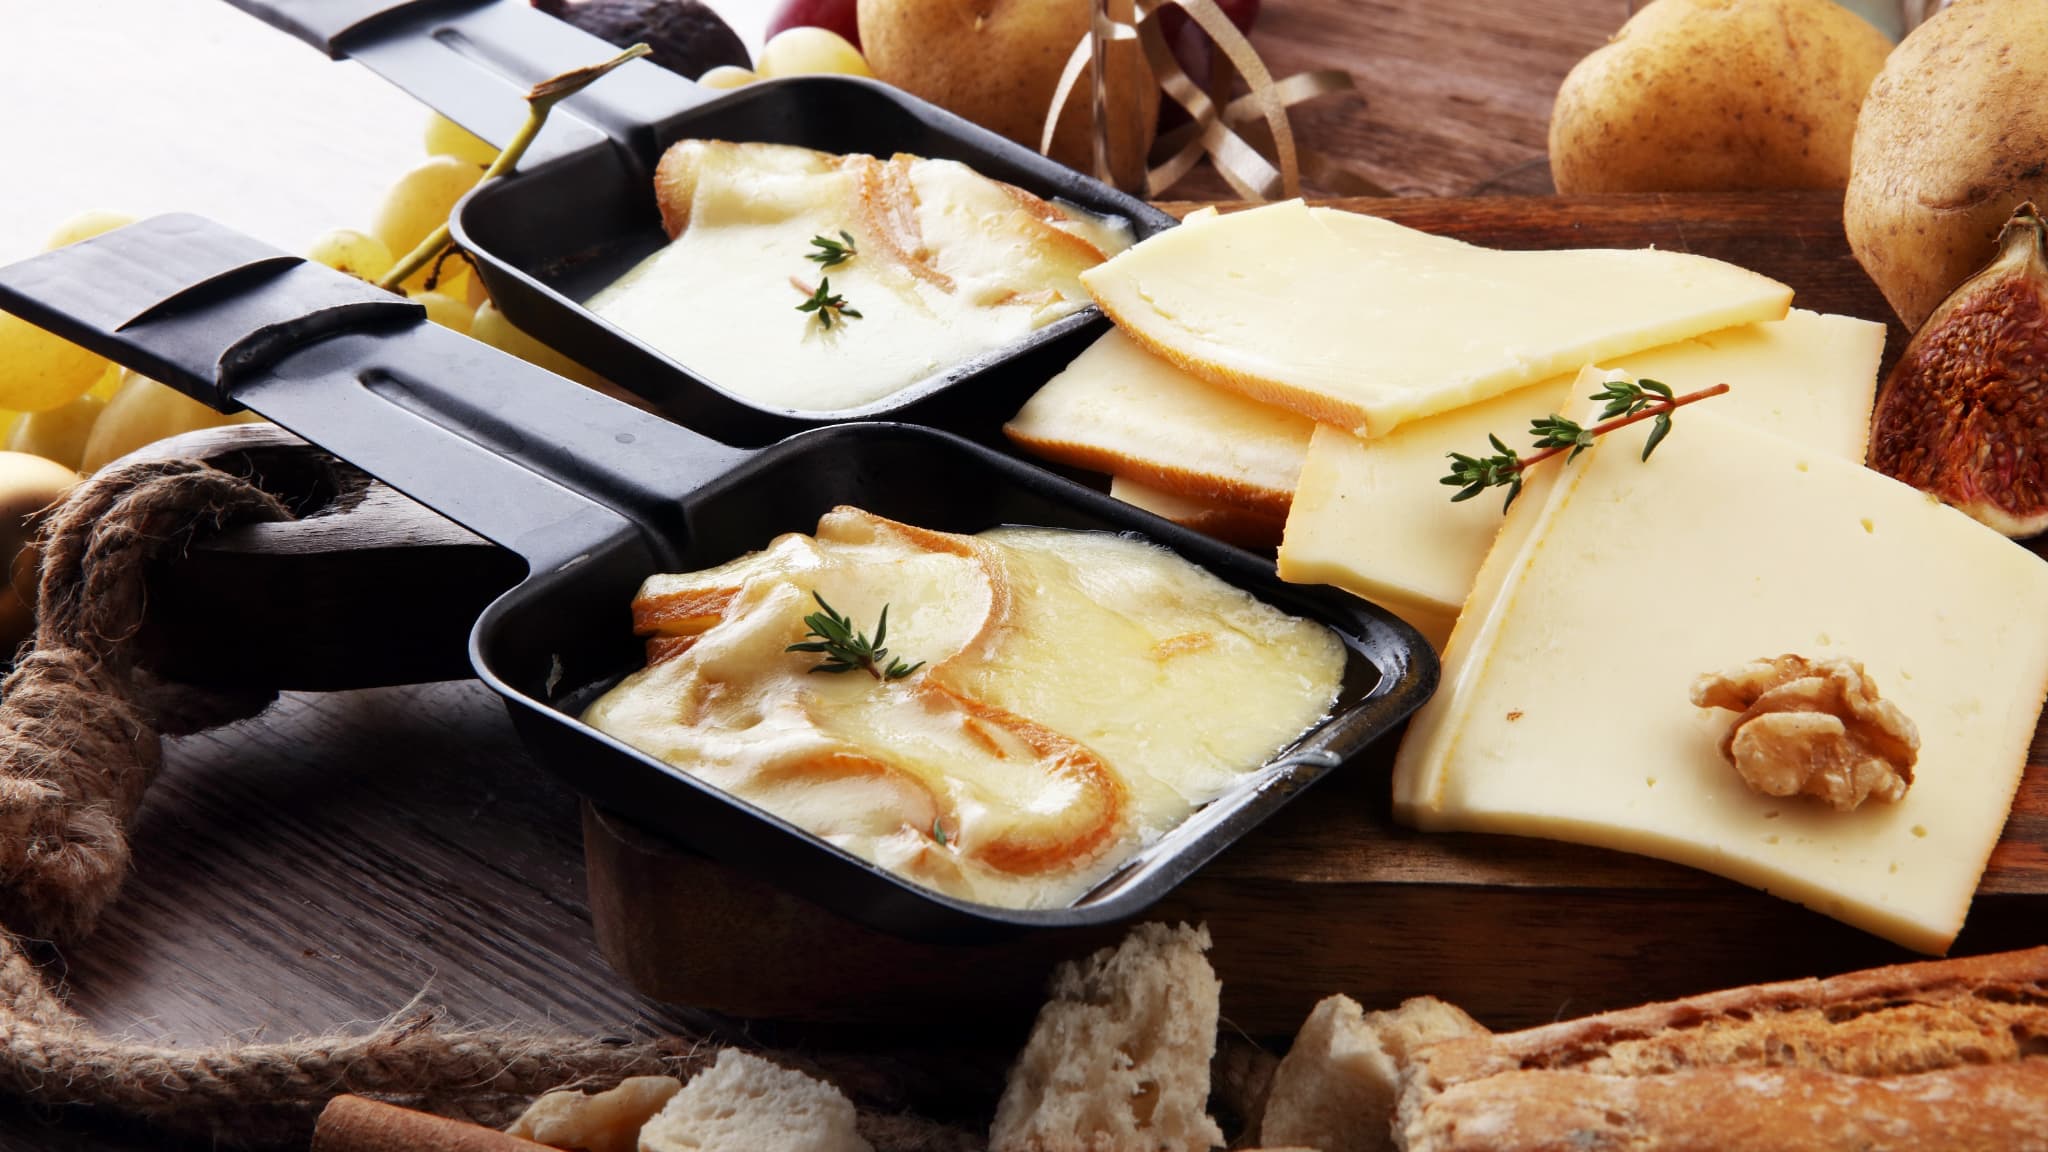 Pourquoi les tranches au fond de la barquette de fromage à raclette sont  toujours mal coupées ? : r/AskFrance